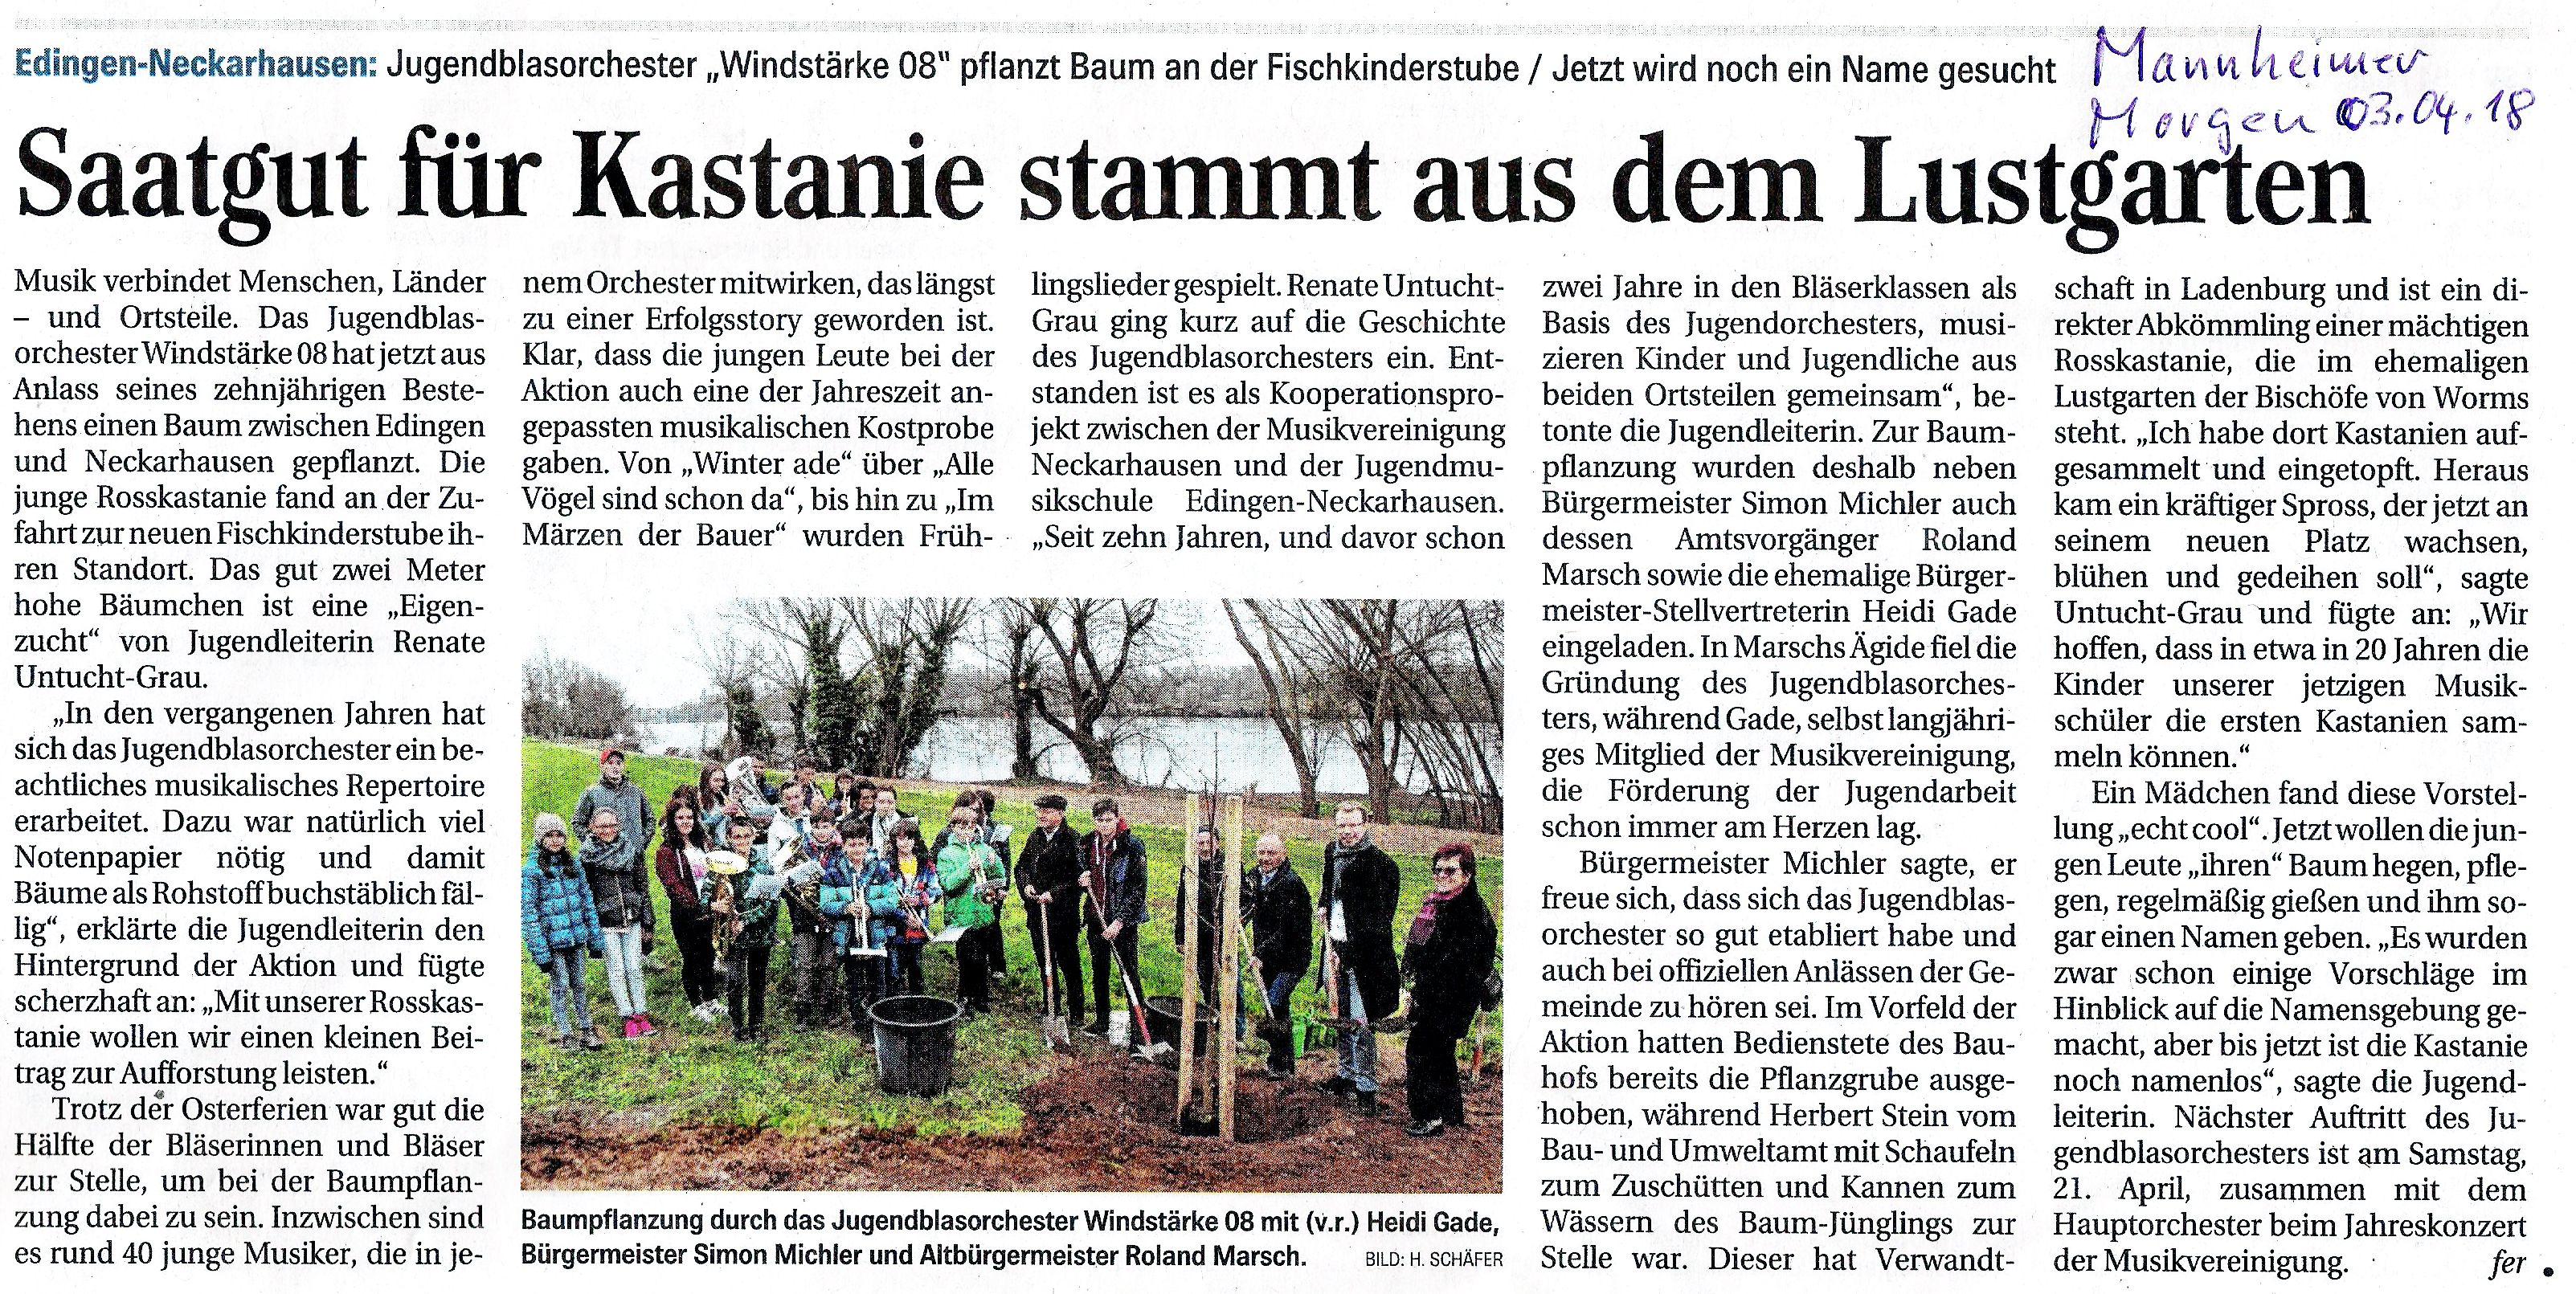 Pressebericht Mannheimer Morgen vom 3.1.18